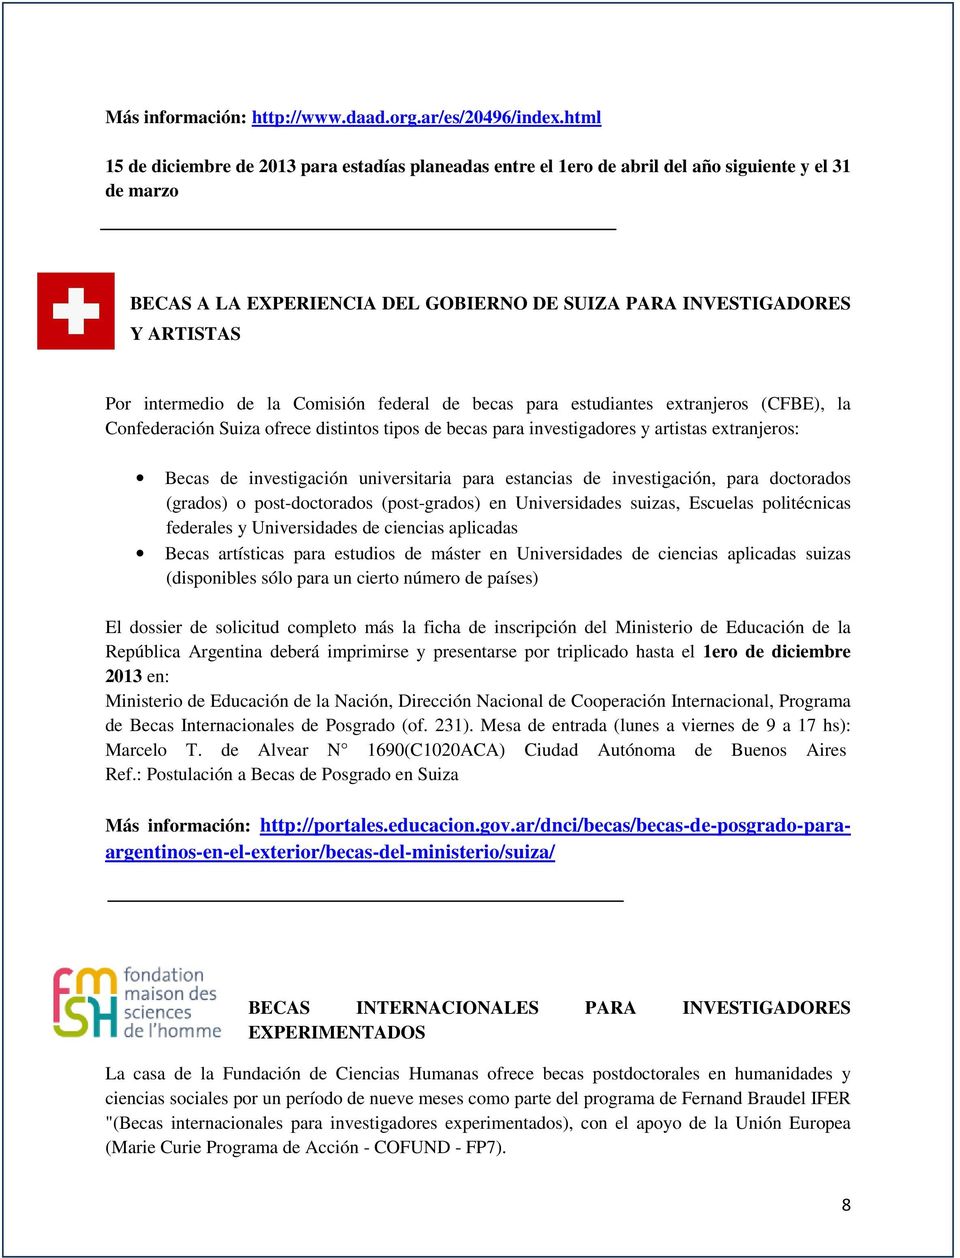 intermedio de la Comisión federal de becas para estudiantes extranjeros (CFBE), la Confederación Suiza ofrece distintos tipos de becas para investigadores y artistas extranjeros: Becas de